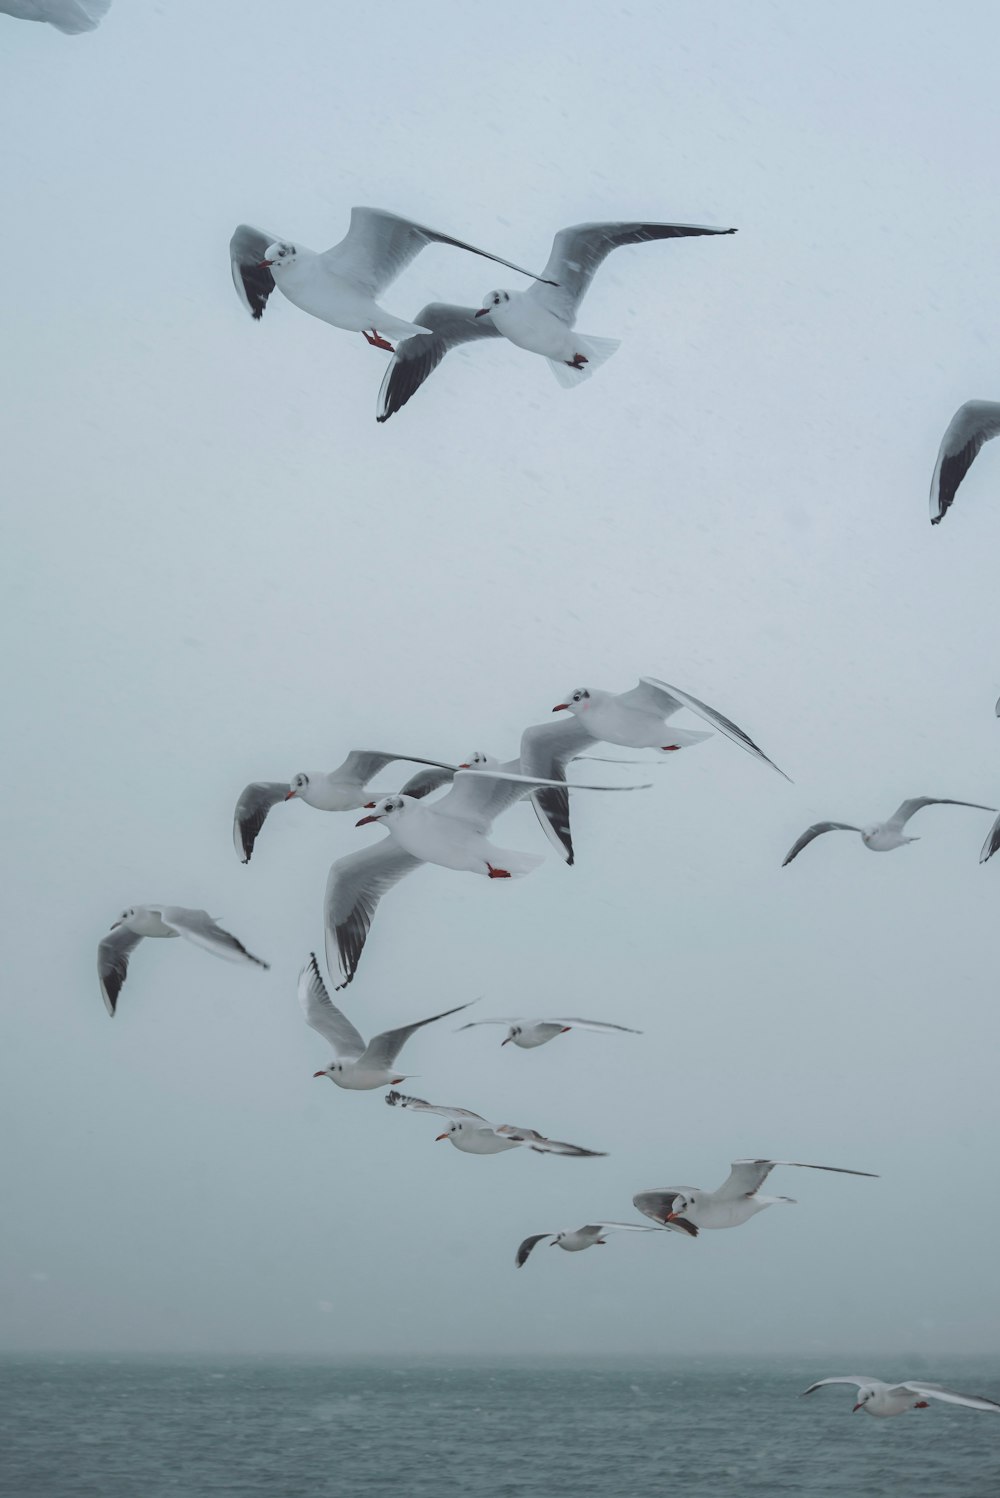 pájaros blancos y negros volando durante el día